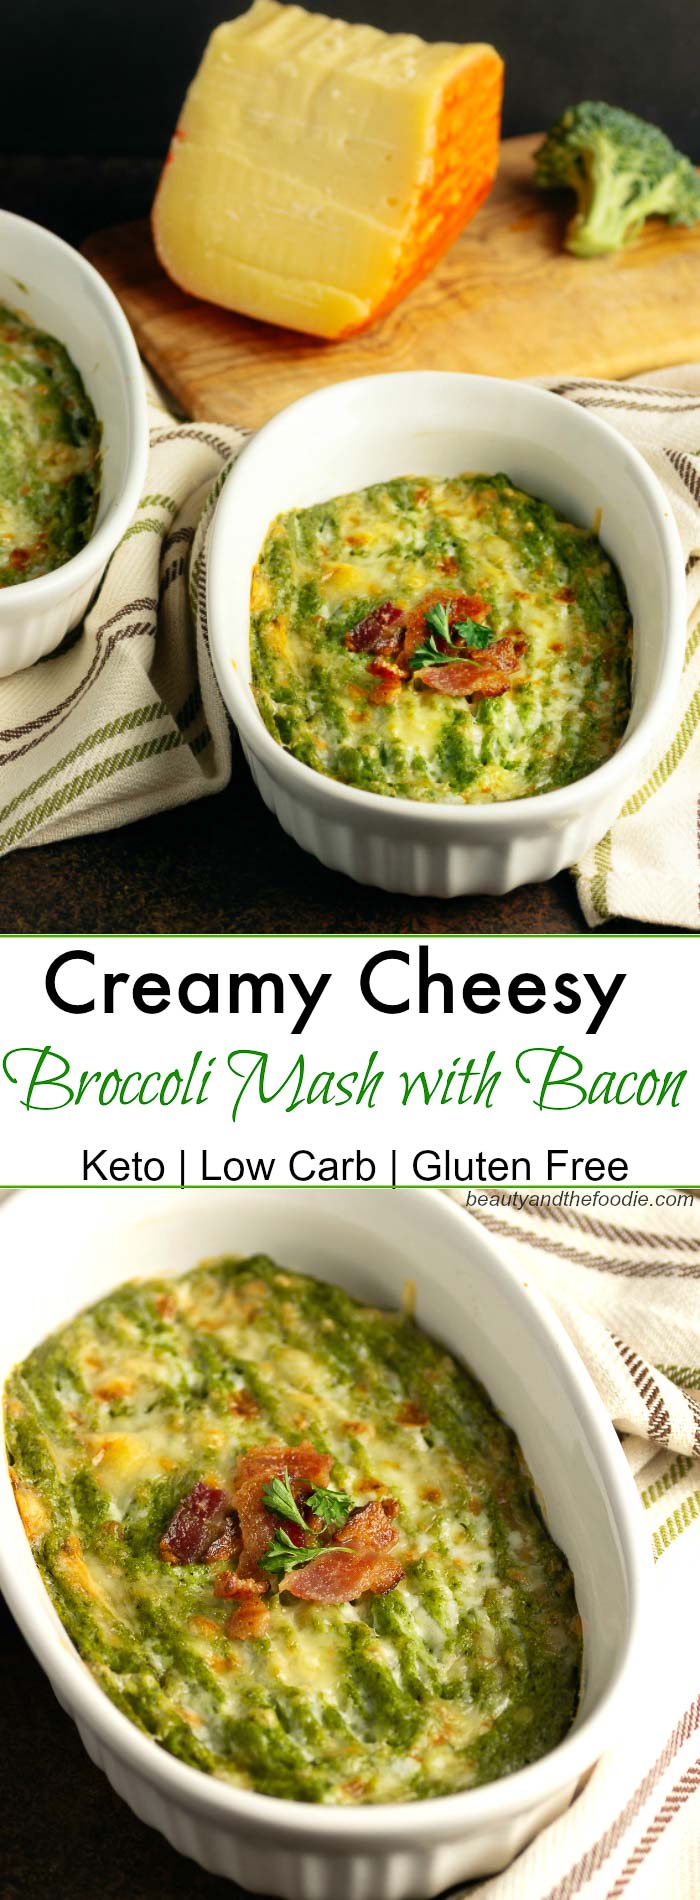 Creamy Cheesy Broccoli Mash with Bacon- #mahón-menorcacheese, #cheesefromspain, #eruocheeses